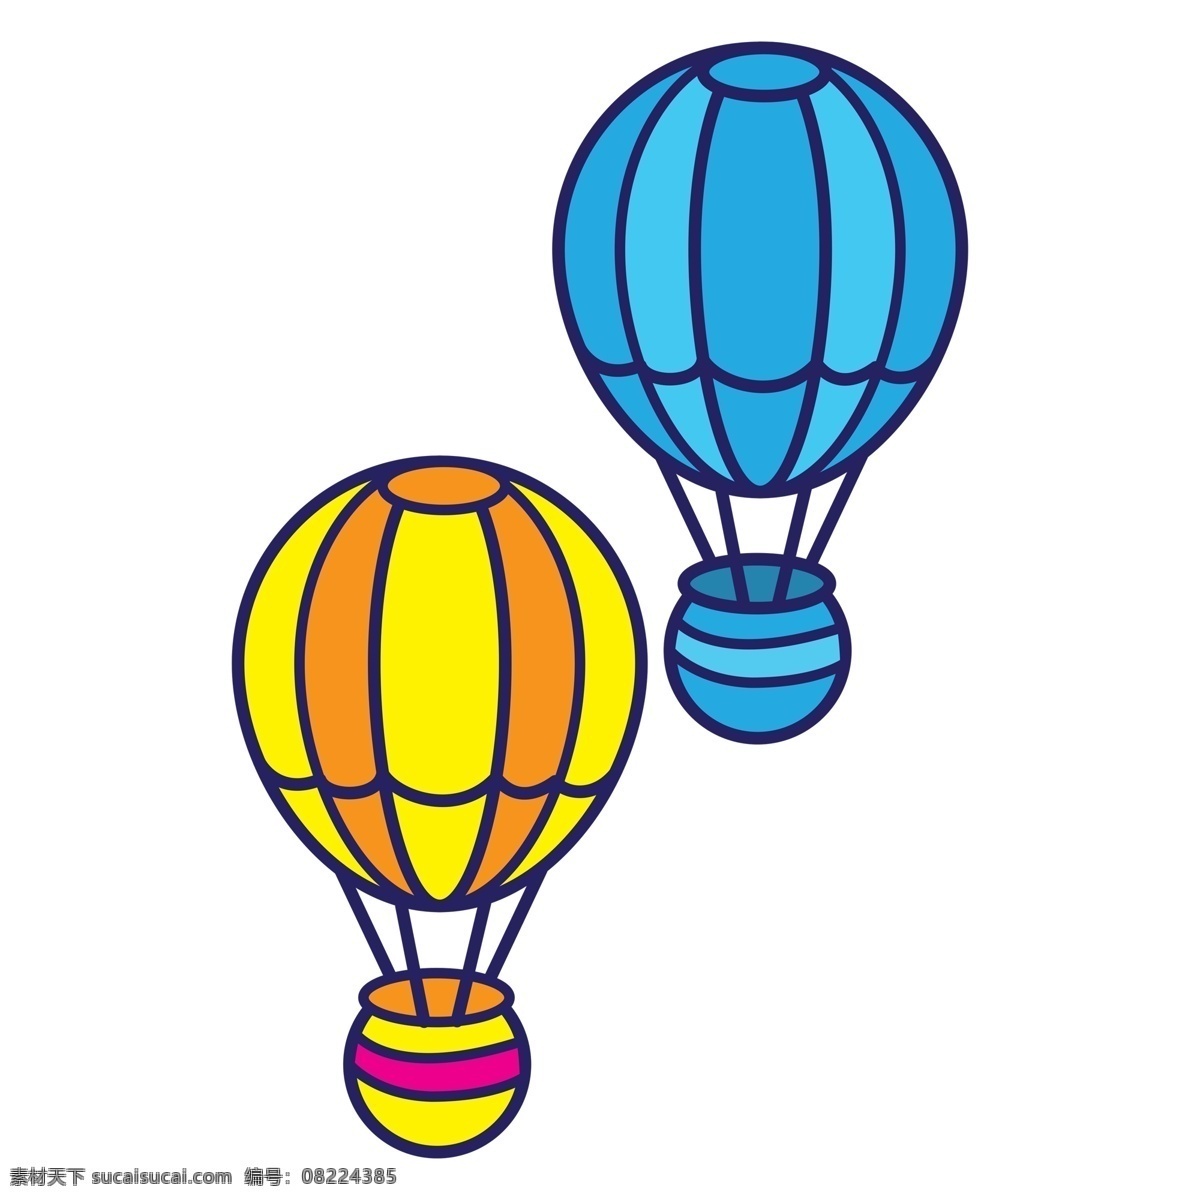 黄色 节日 热气球 卡通 透明 活动素材 手绘素材 可爱 节日元素